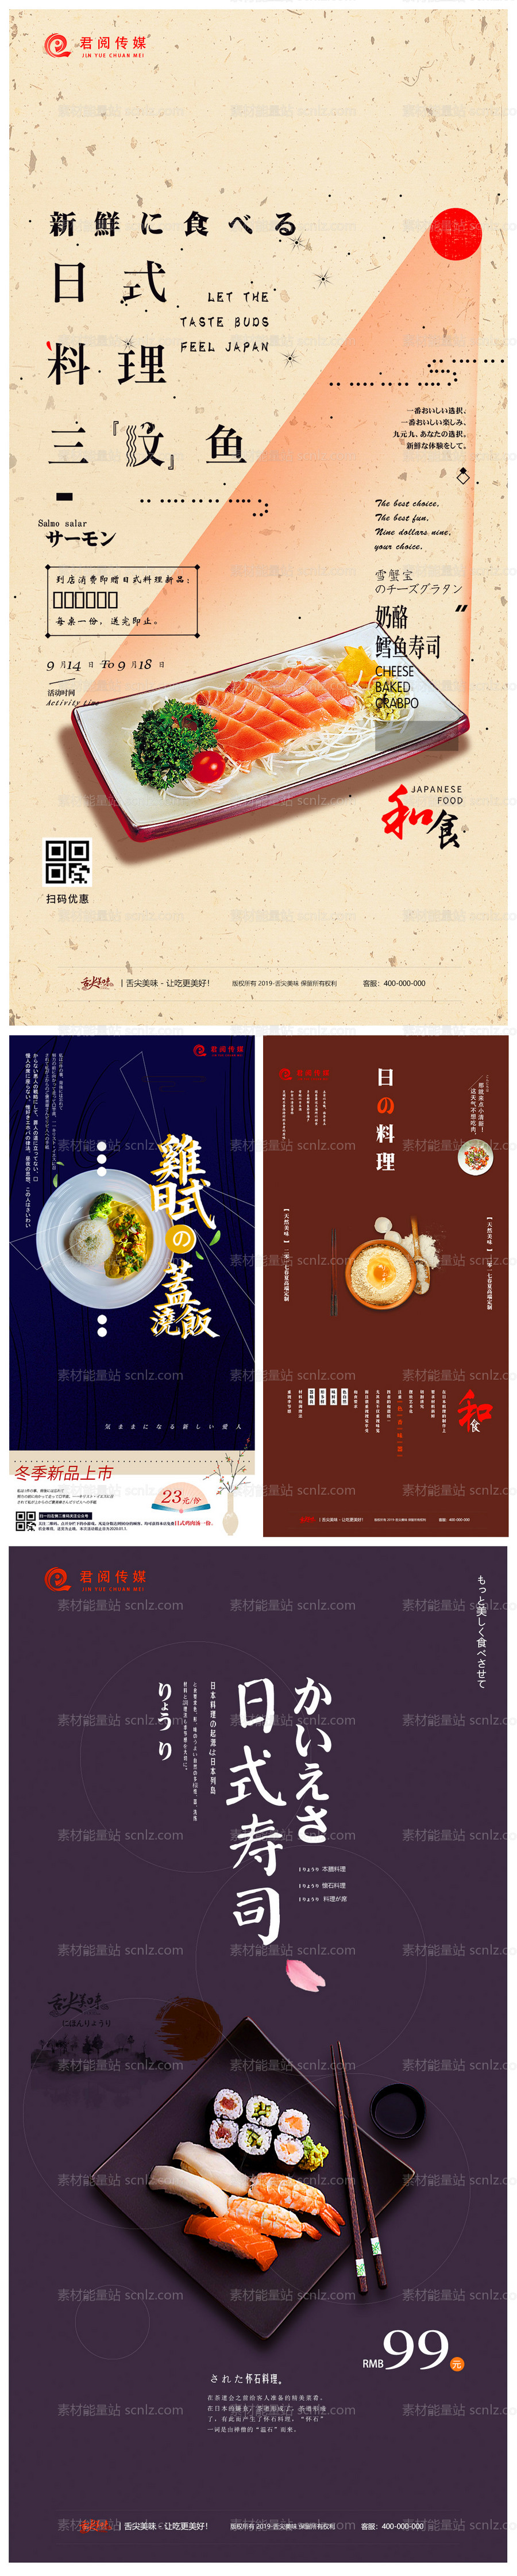 素材能量站-日式料理美食移动端海报系列